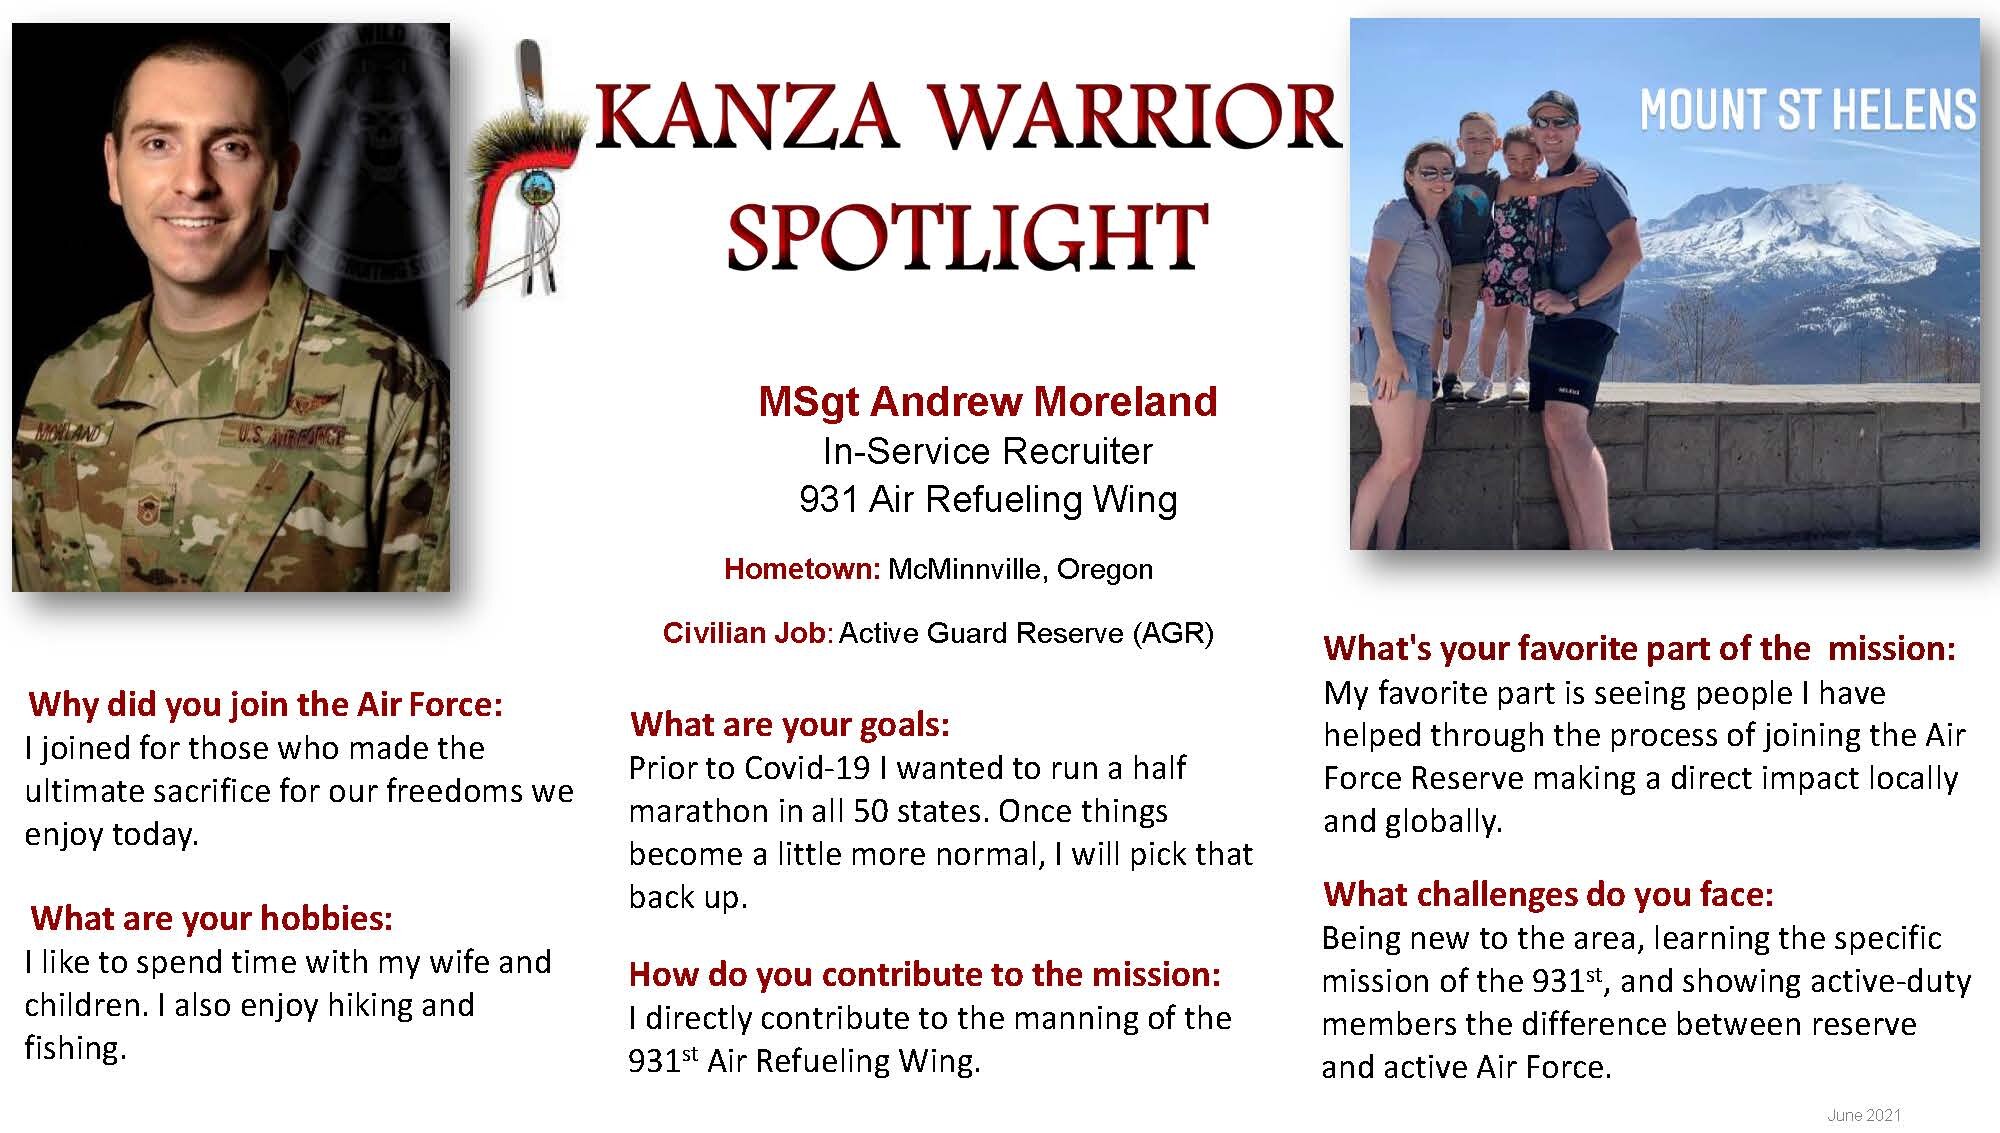 KANZA Warrior Spotlight June 2021